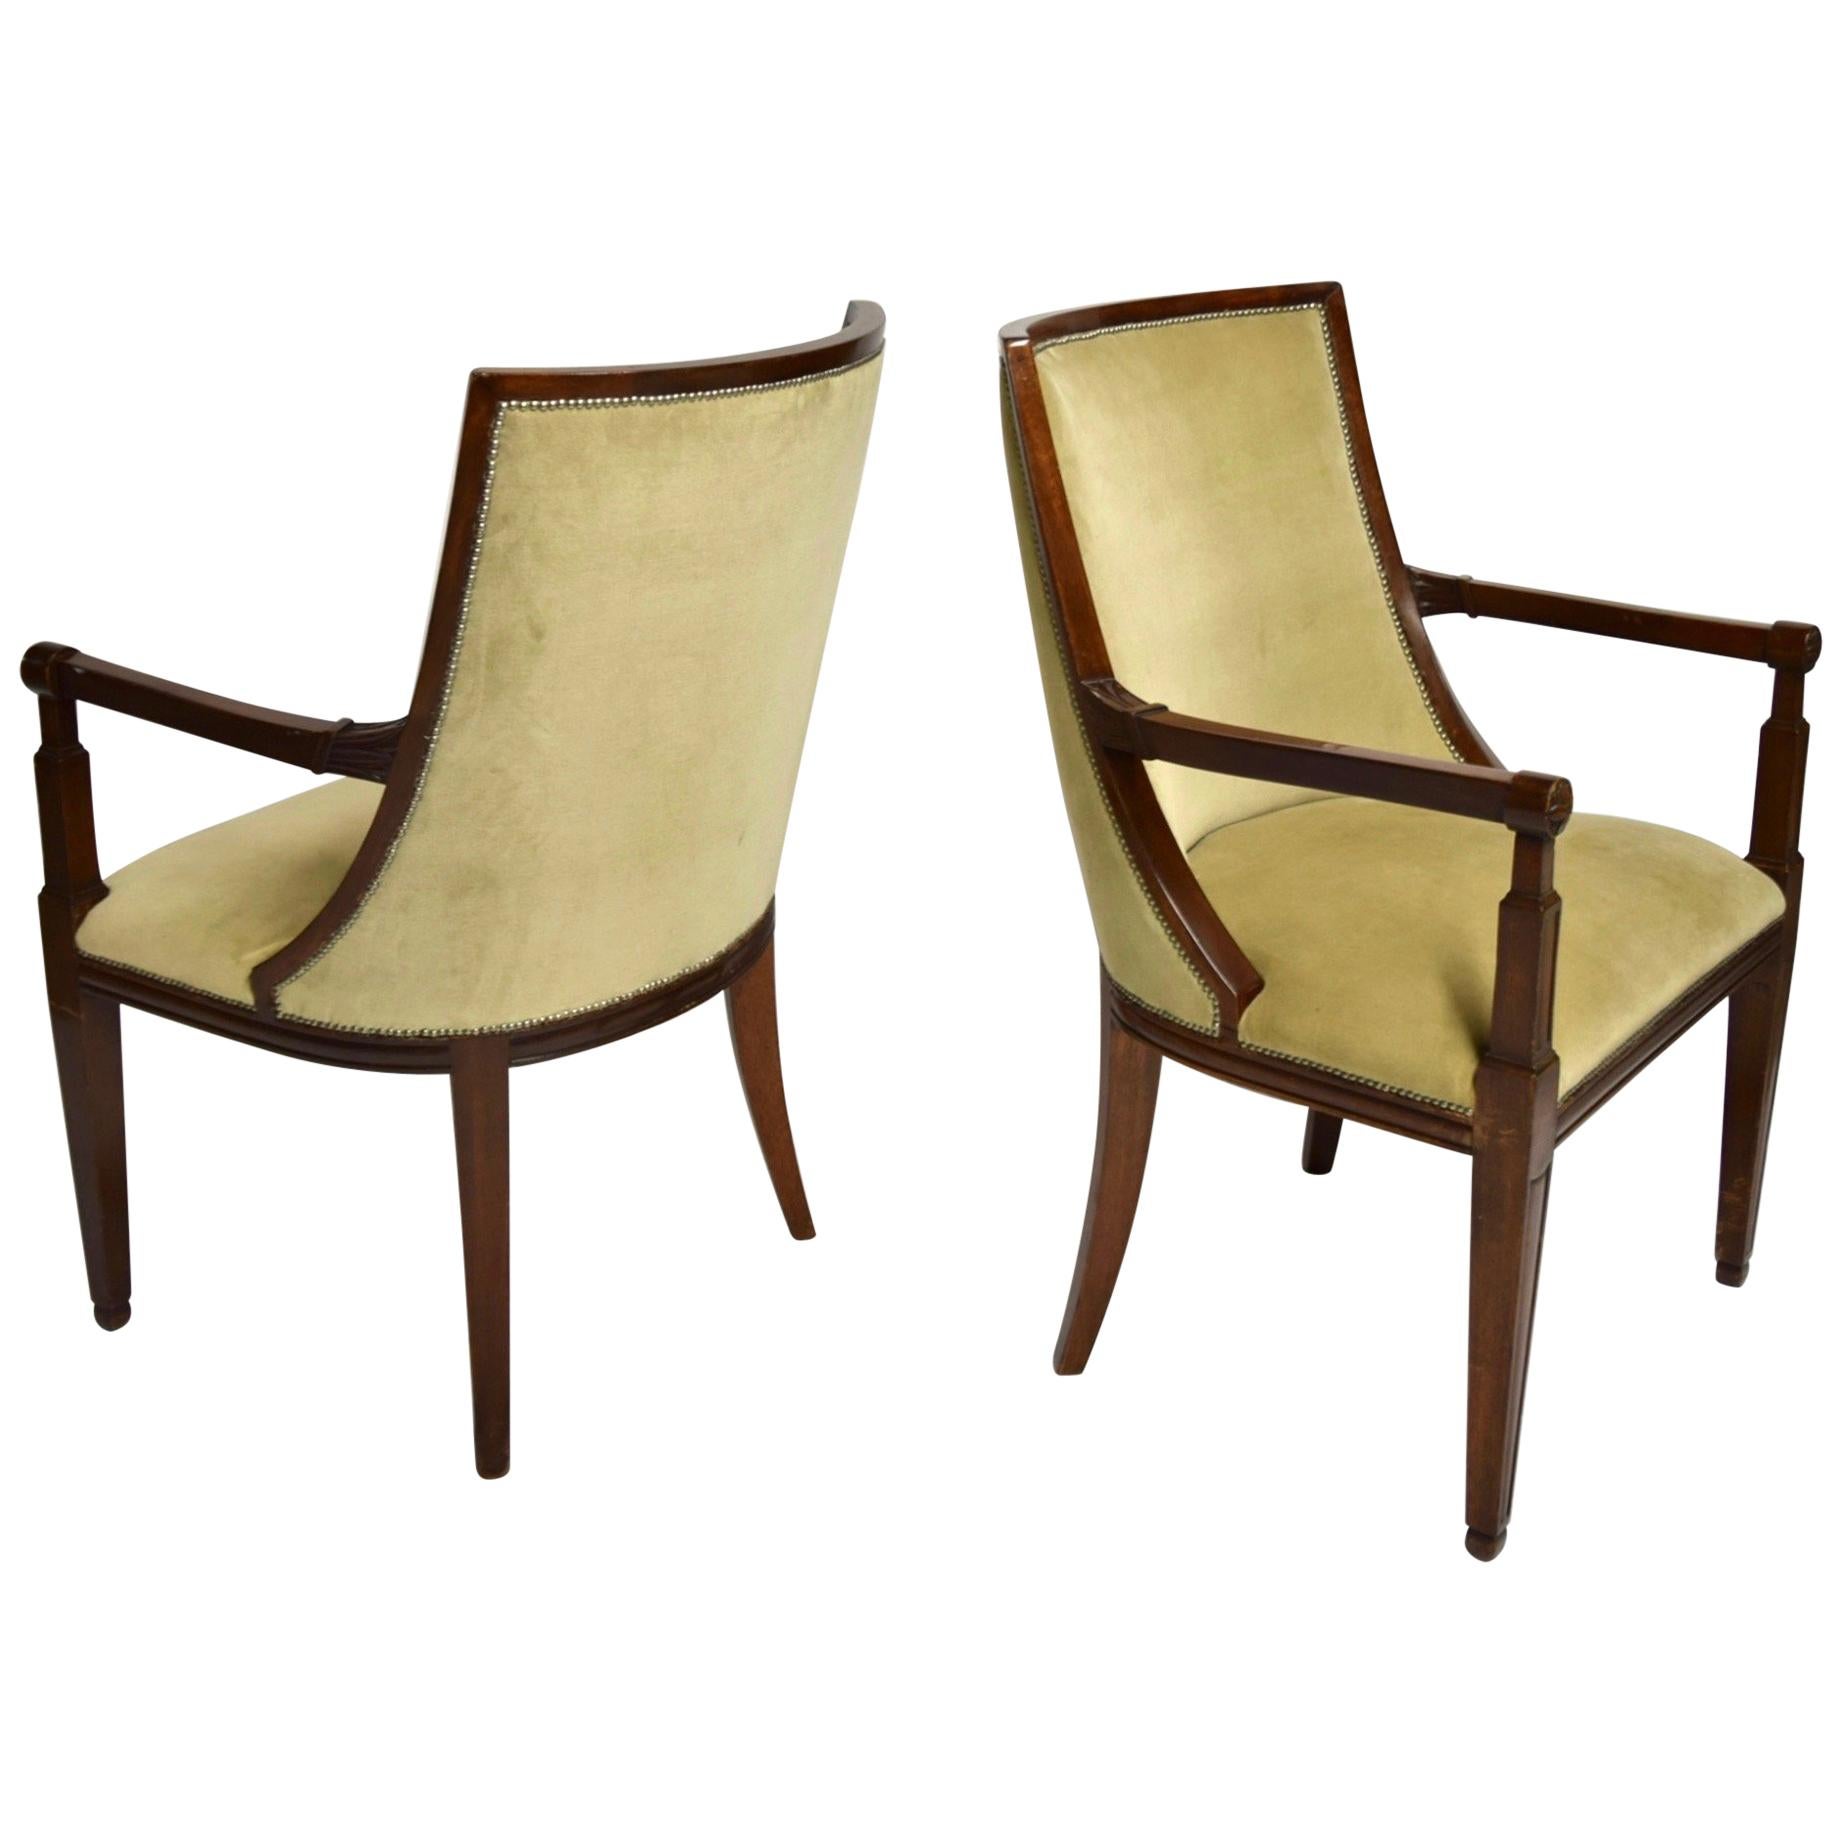 Paar Sessel aus Mahagoniholz und beigefarbenem Mohair-Samt, Frankreich um 1840